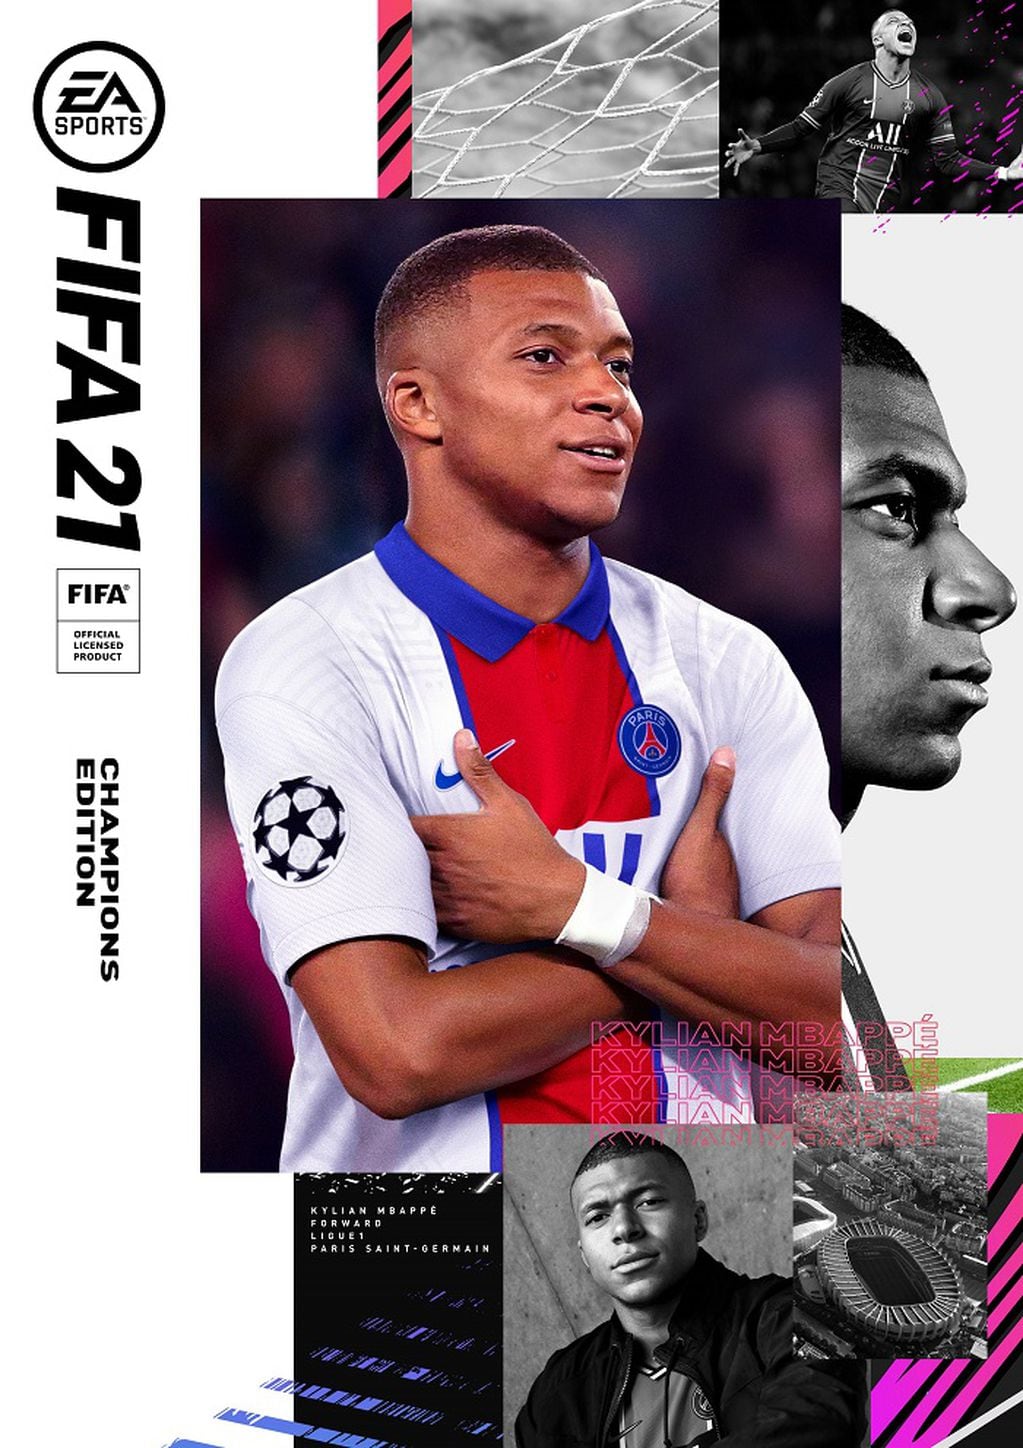 22/07/2020 El delantero francés Kylian Mbappé es el protagonista de la portada del videojuego FIFA 21

ESPAÑA EUROPA MADRID DEPORTES

EA SPORTS

